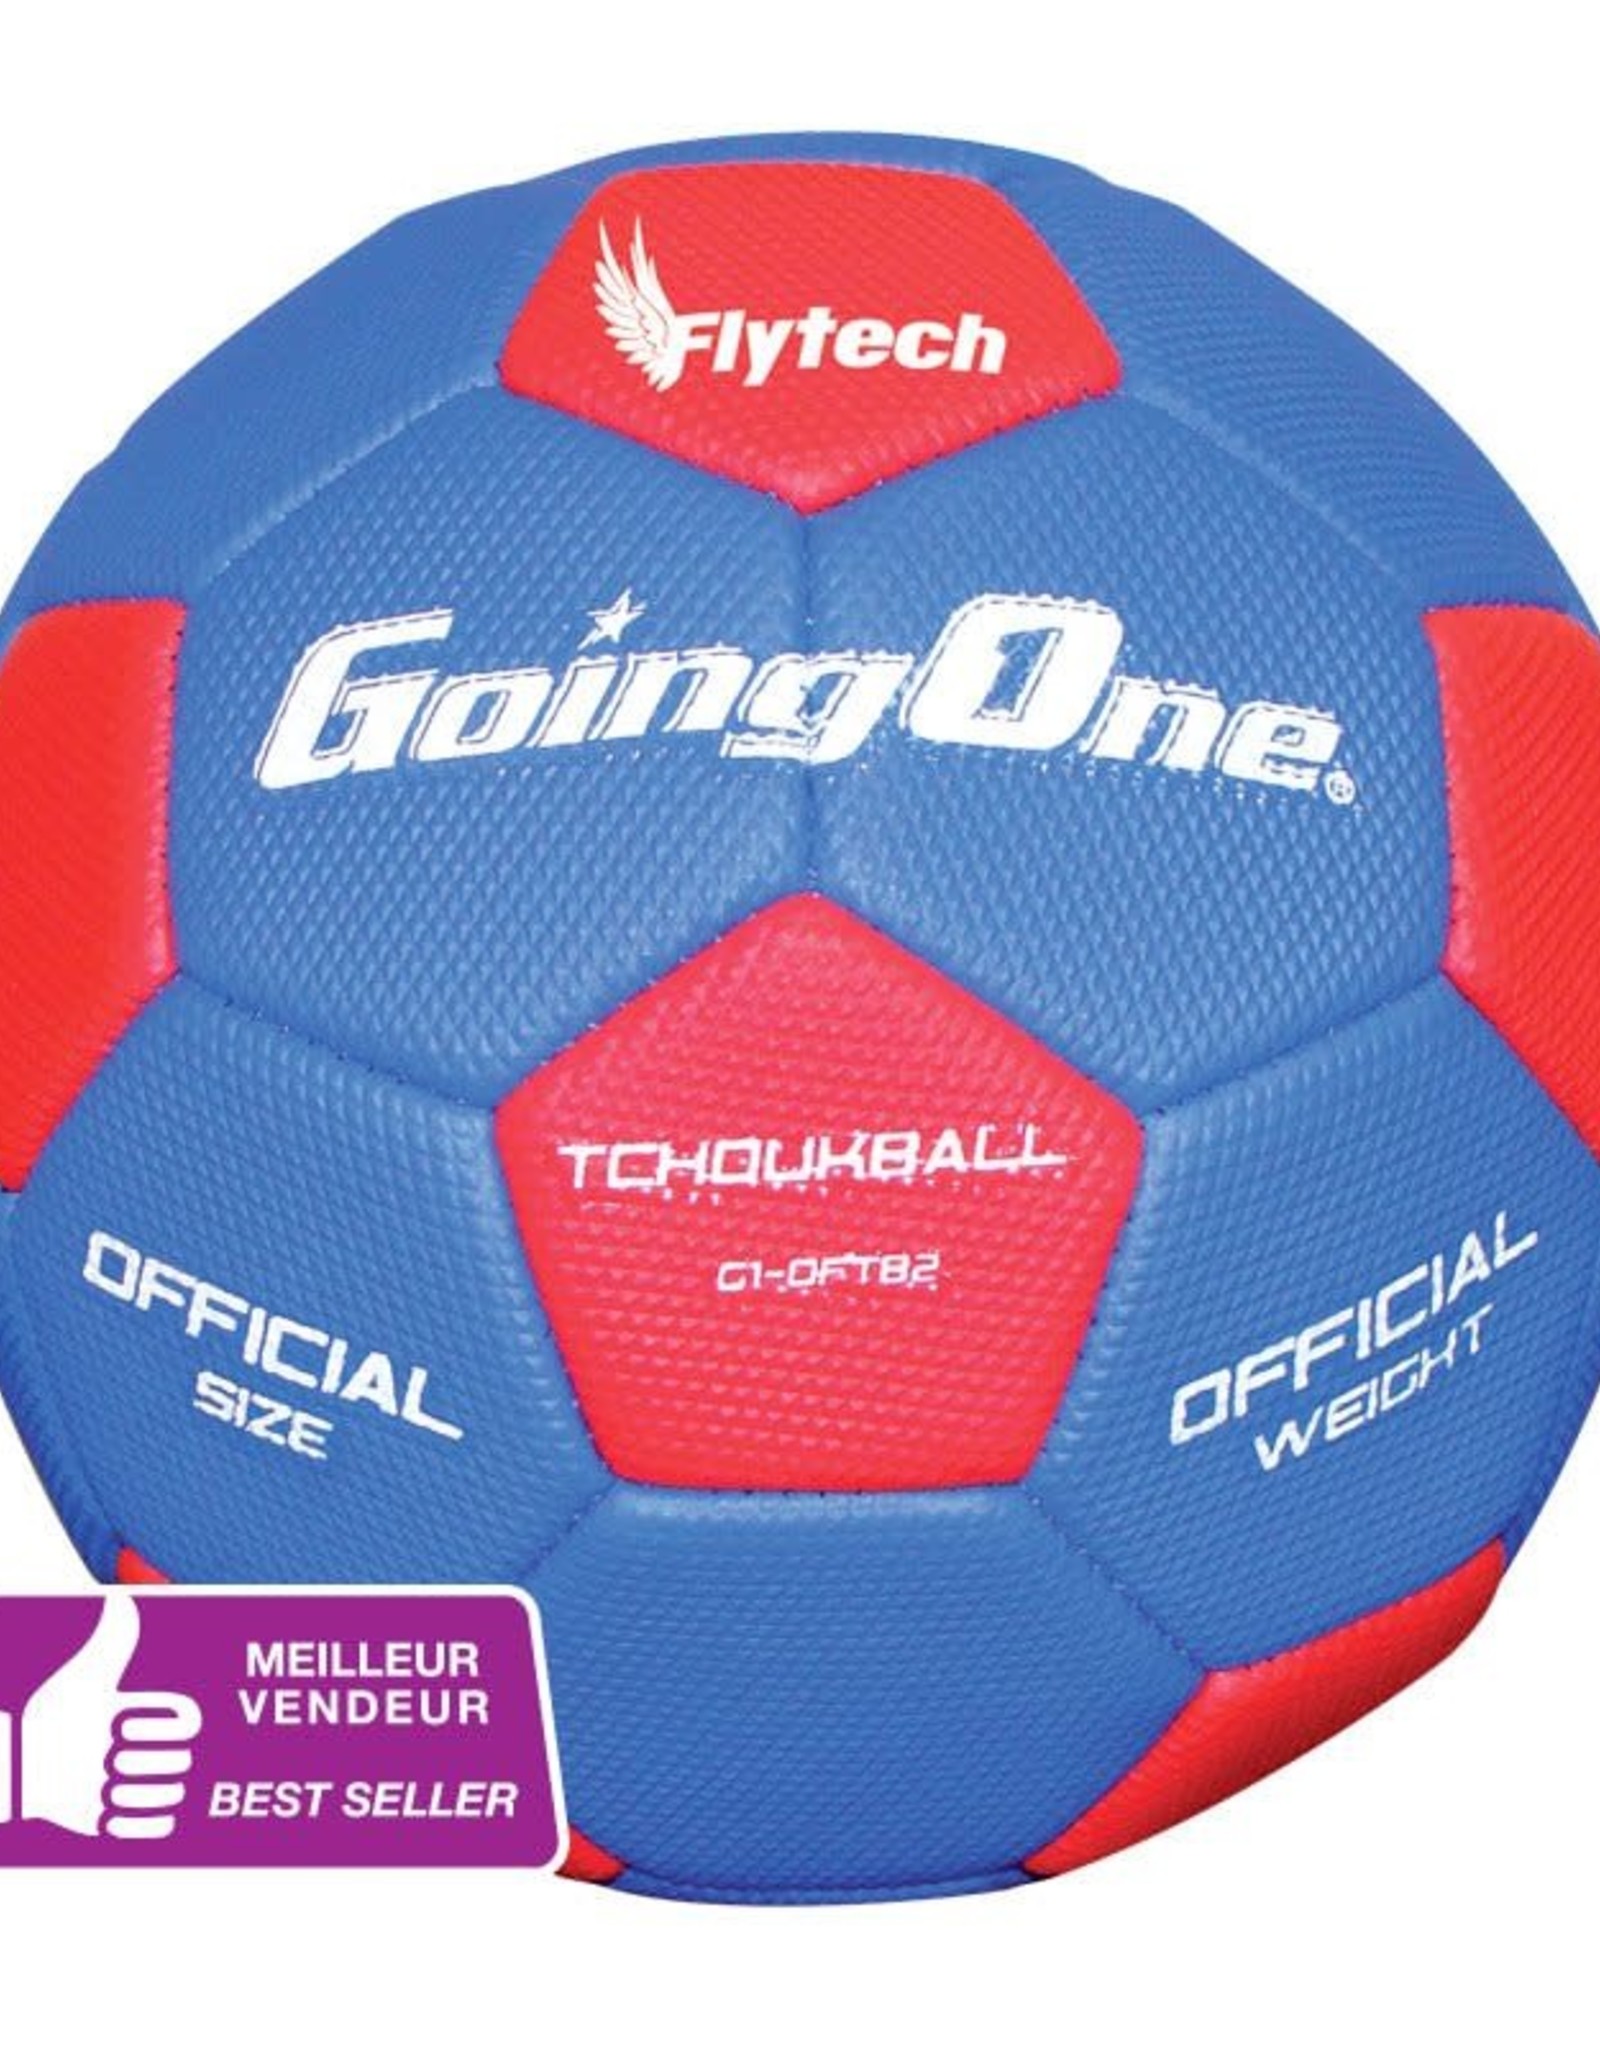 Ballon de handball Tremblay Handball training hand taille 1 7-14616 - Neuf